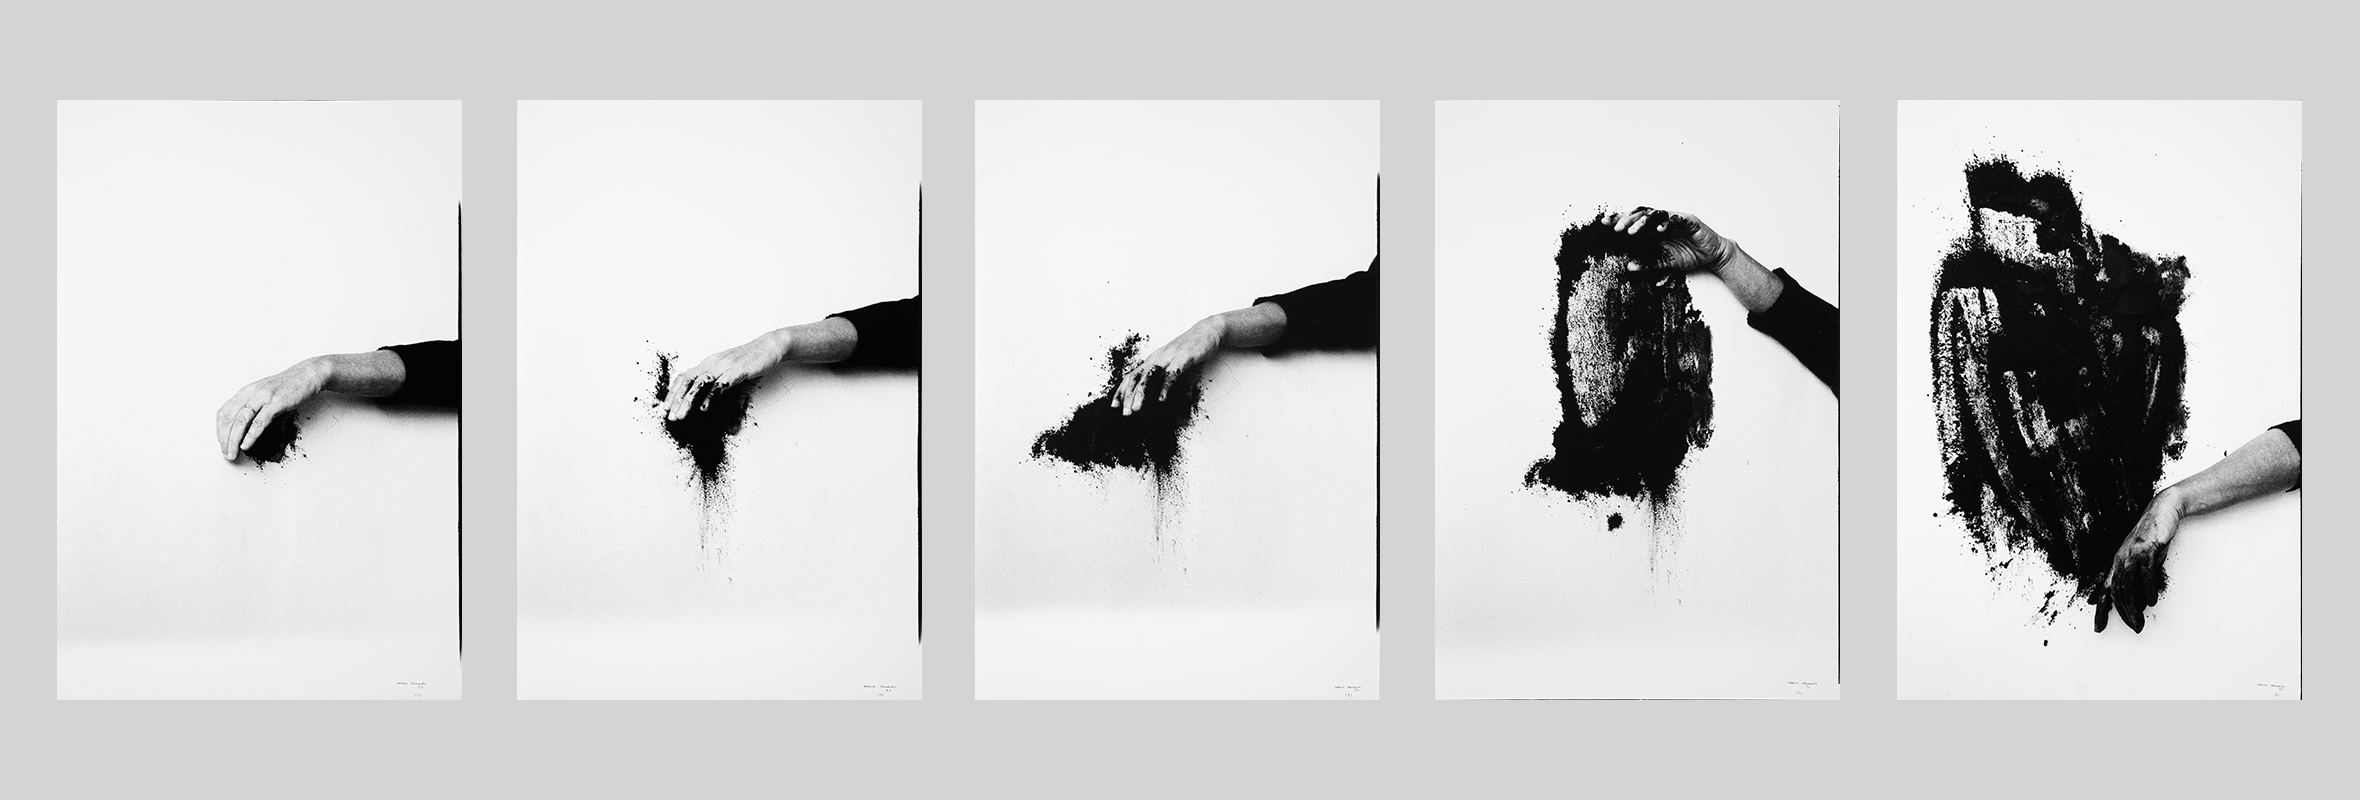 Helena Almeida, “Saída negra” [Sortie noire], 1995. Photographie noir et blanc (5 éléments), 71 × 48 cm (chaque), Coll. Norlinda and José Lima. Photo Aníbal Lemos, courtesy Núcleo de Arte da Oliva Creative Factory, S. João da Madeira